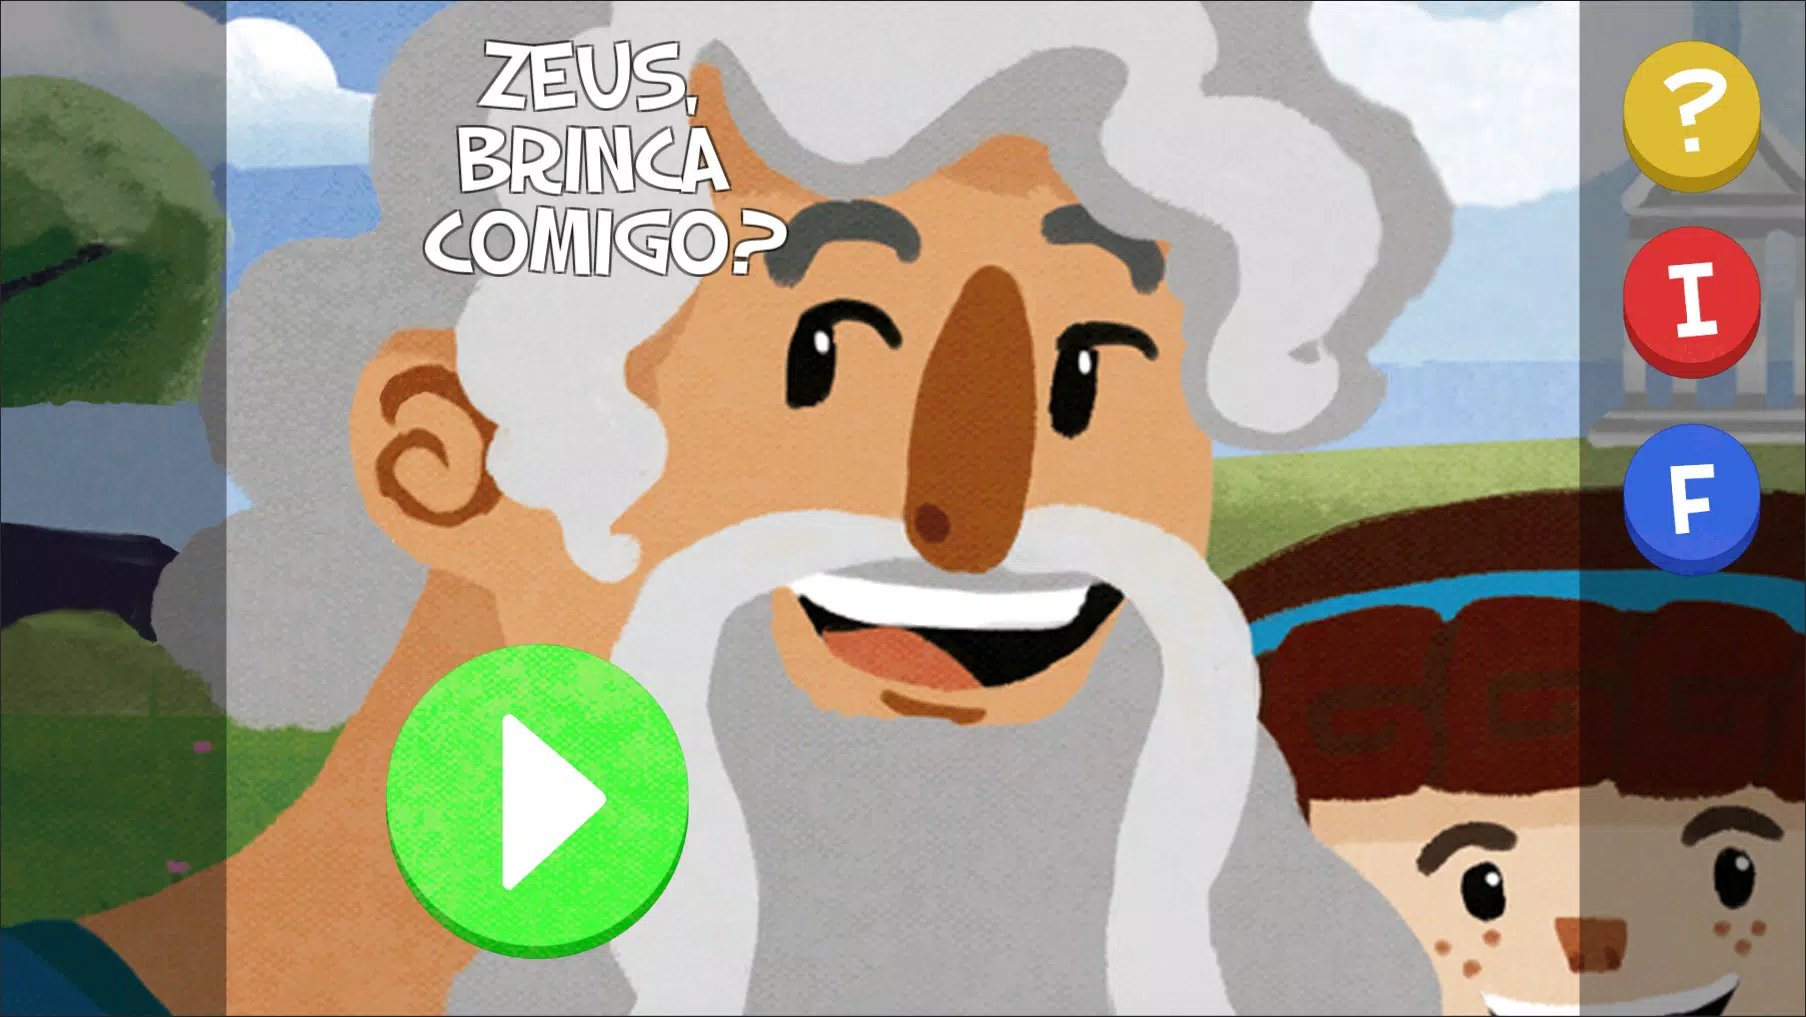  Zeus Brinca Comigo? (Em Portuguese do Brasil